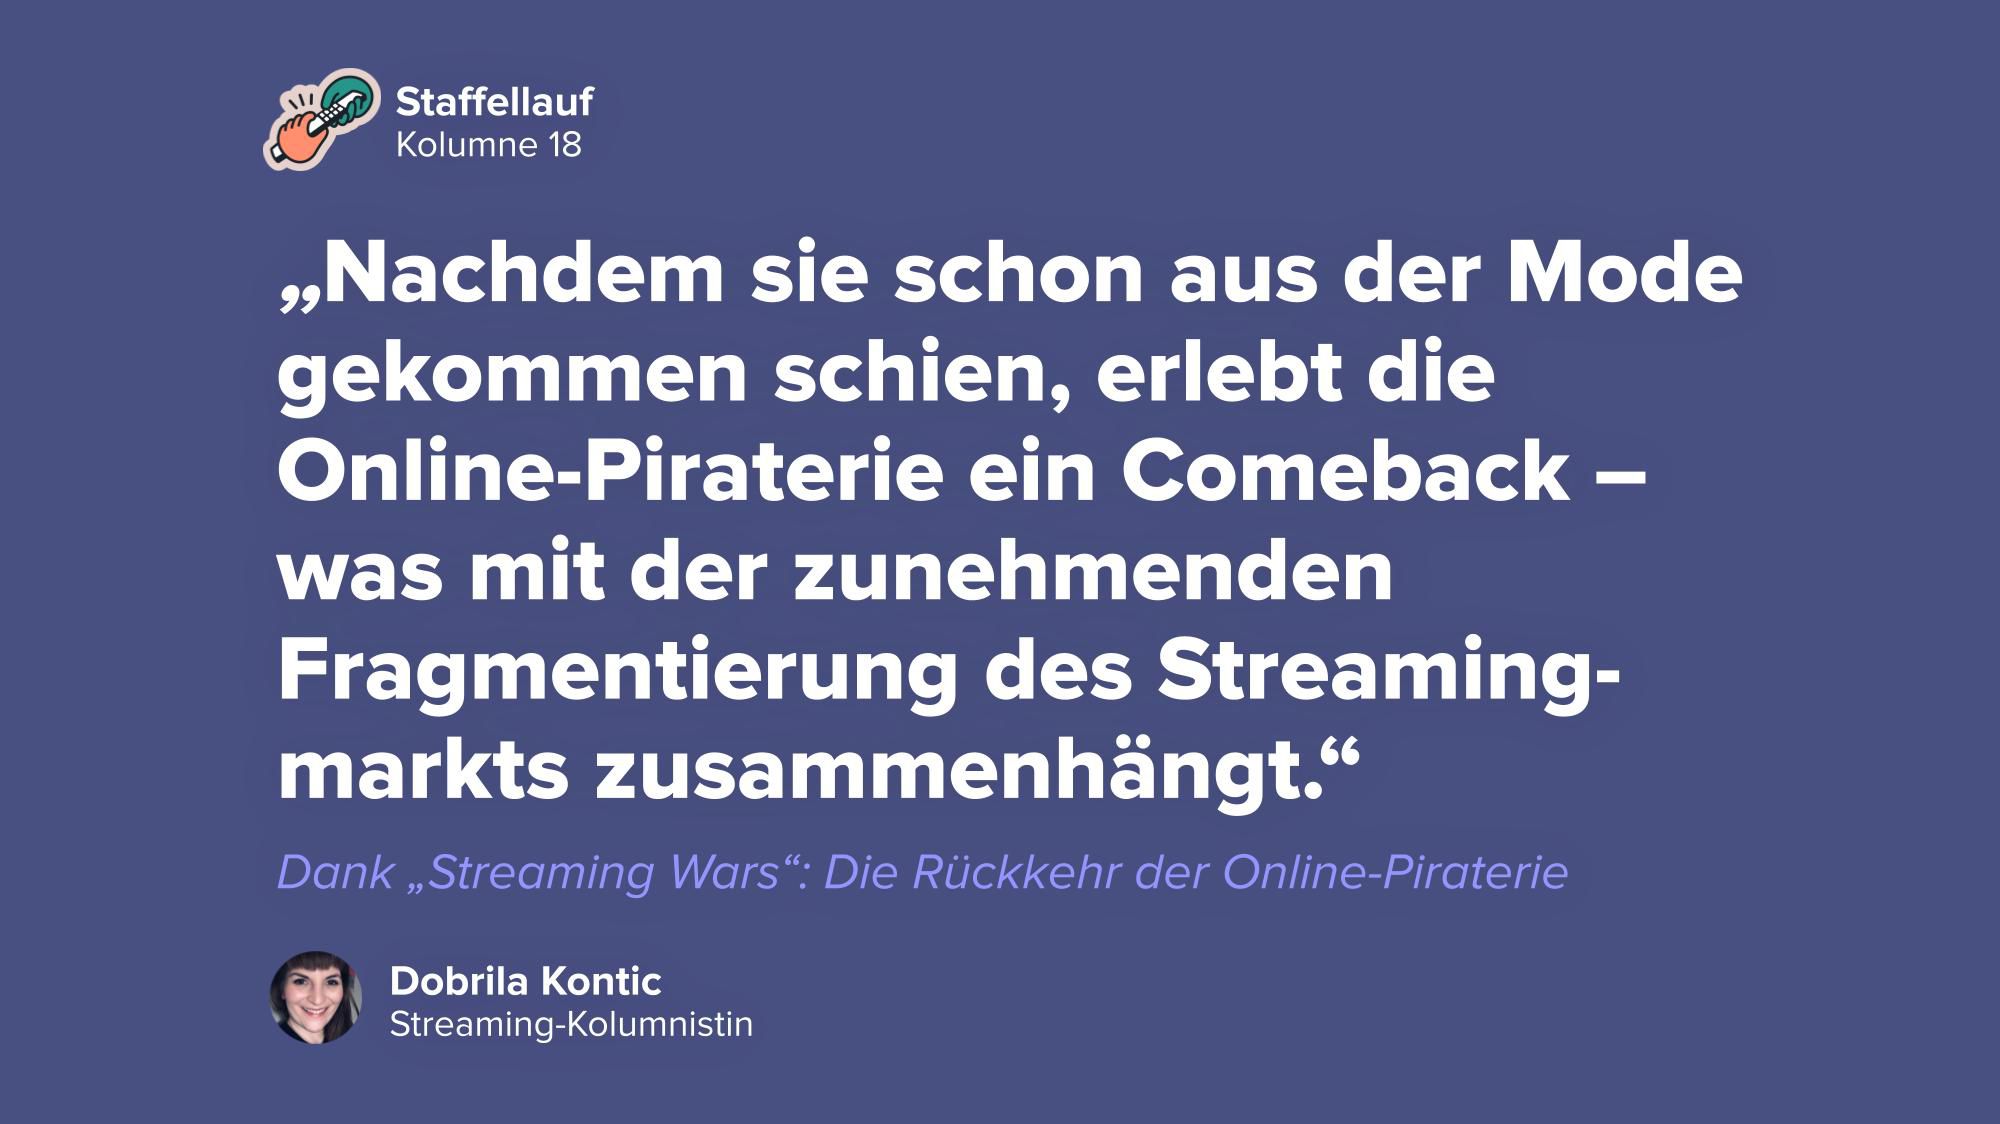 Dank „Streaming Wars": Die Rückkehr der Online-Piraterie